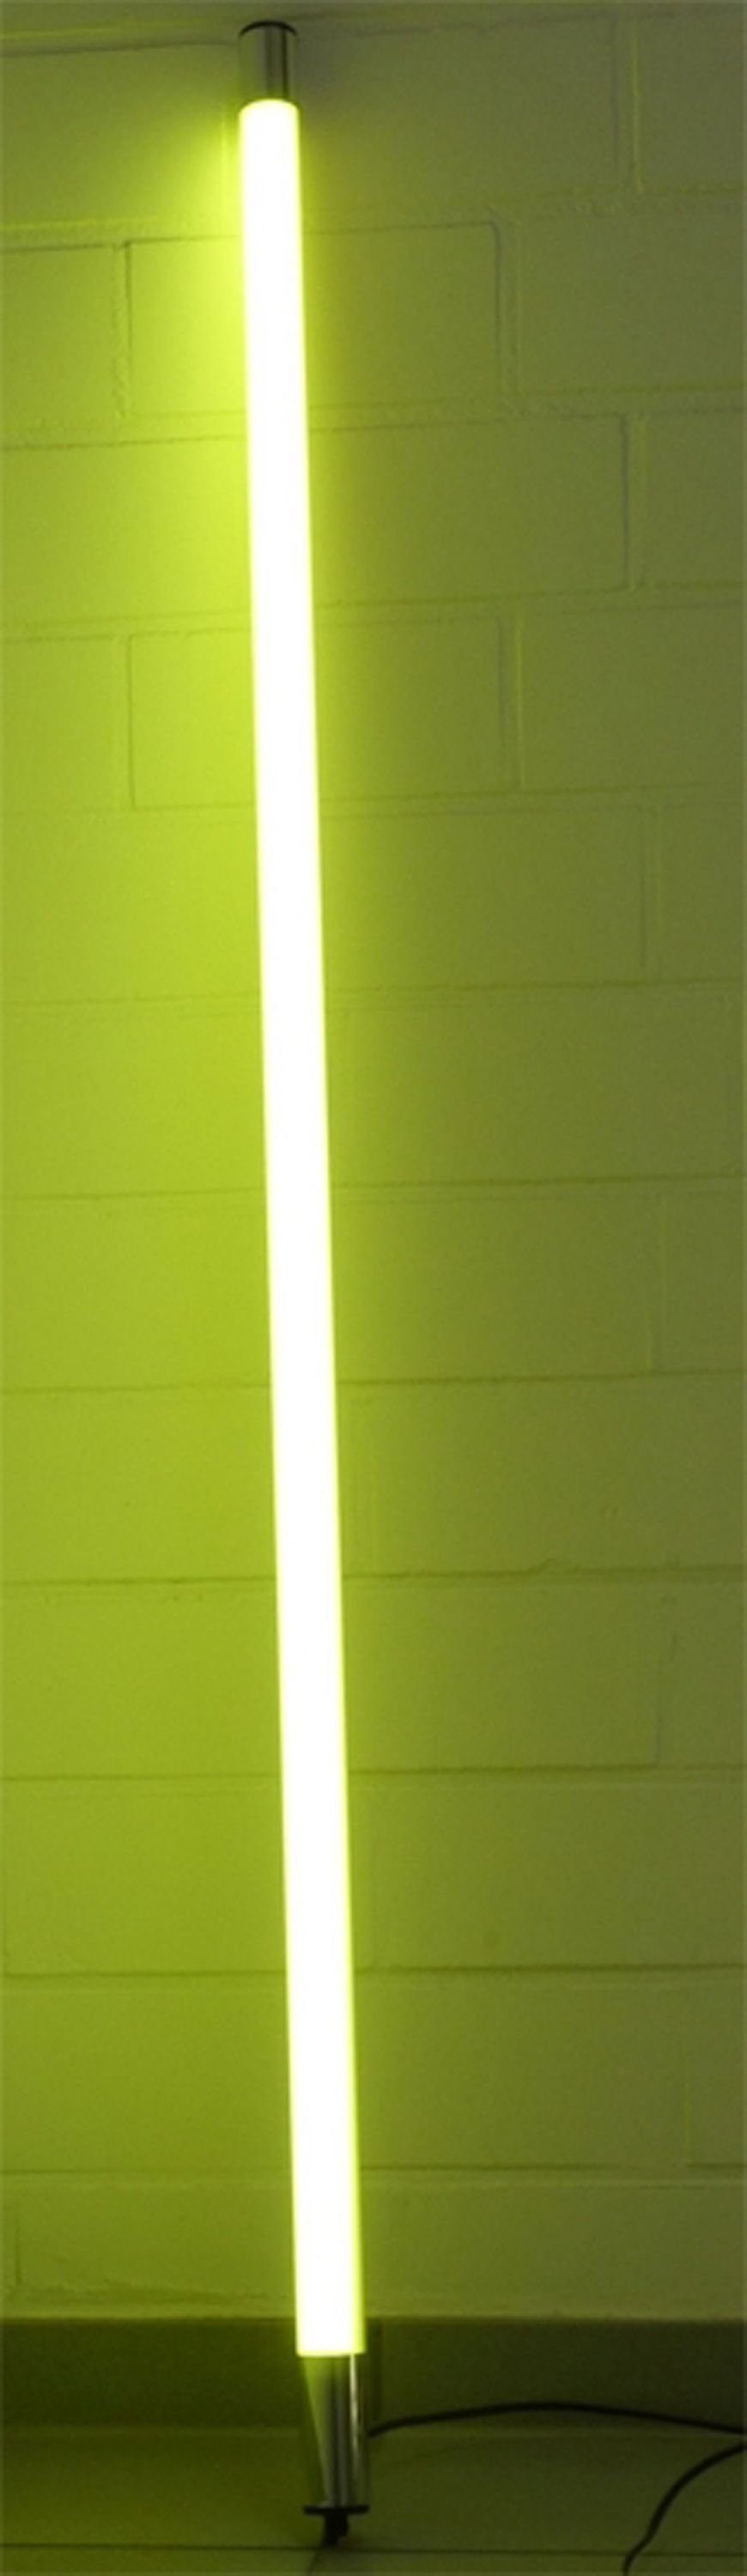 XENON LED Wandleuchte 8383 LED Leuchtstab Satiniert 1,53m Lang 2200 Lumen IP44 Außen Gelb, LED, Xenon / Gelb